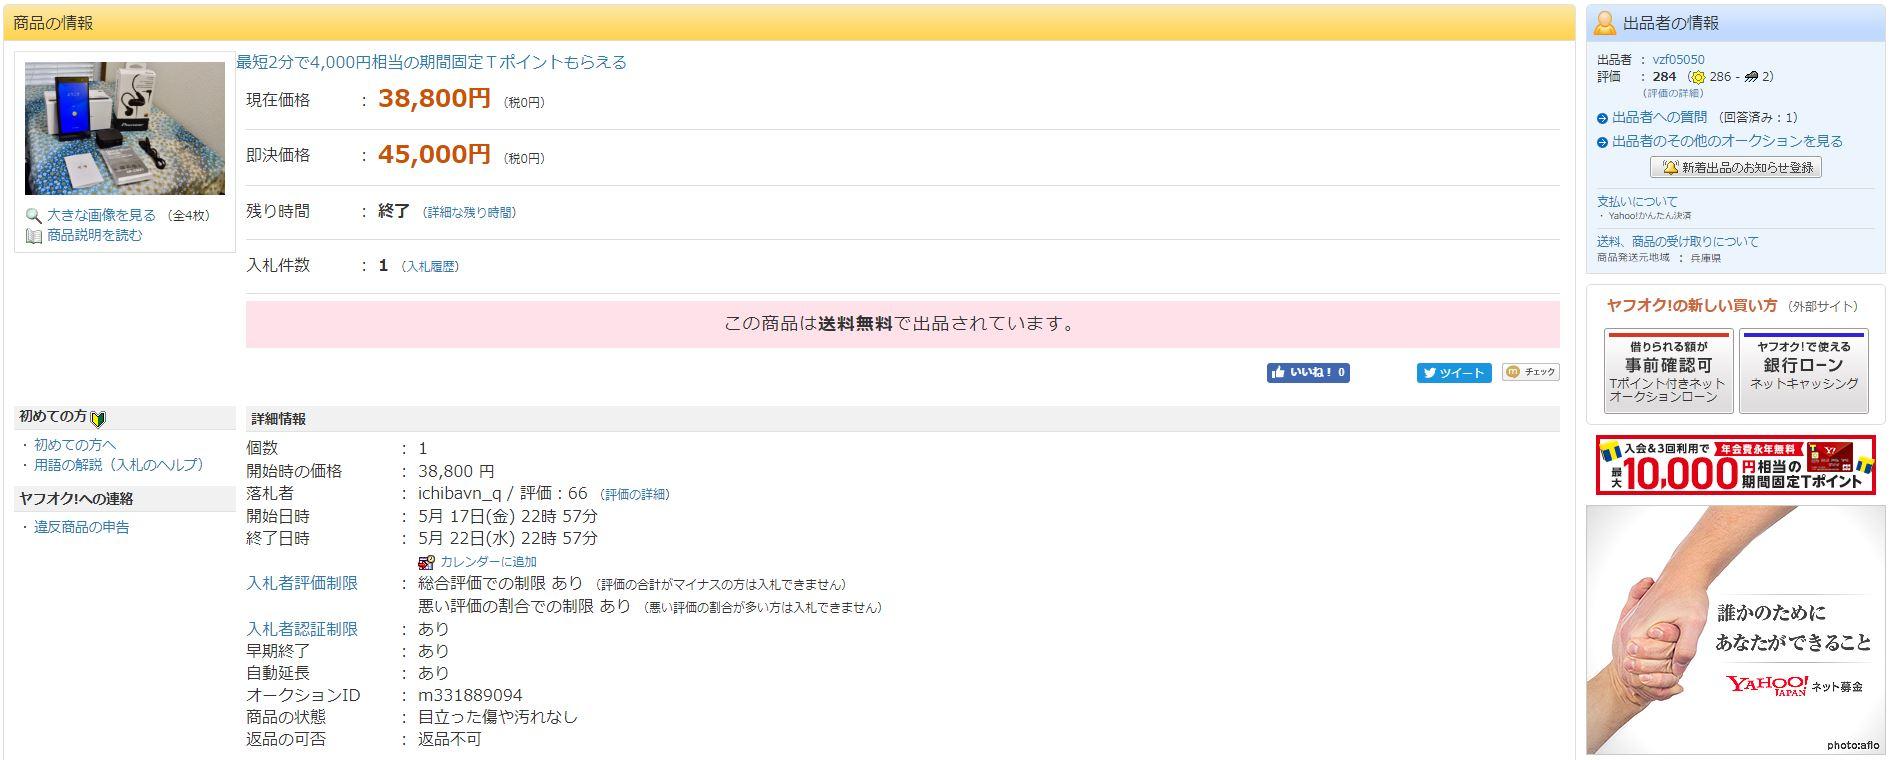 Cách tra cước vận chuyển nội địa Nhật khi mua hàng trên Yahoo Auction